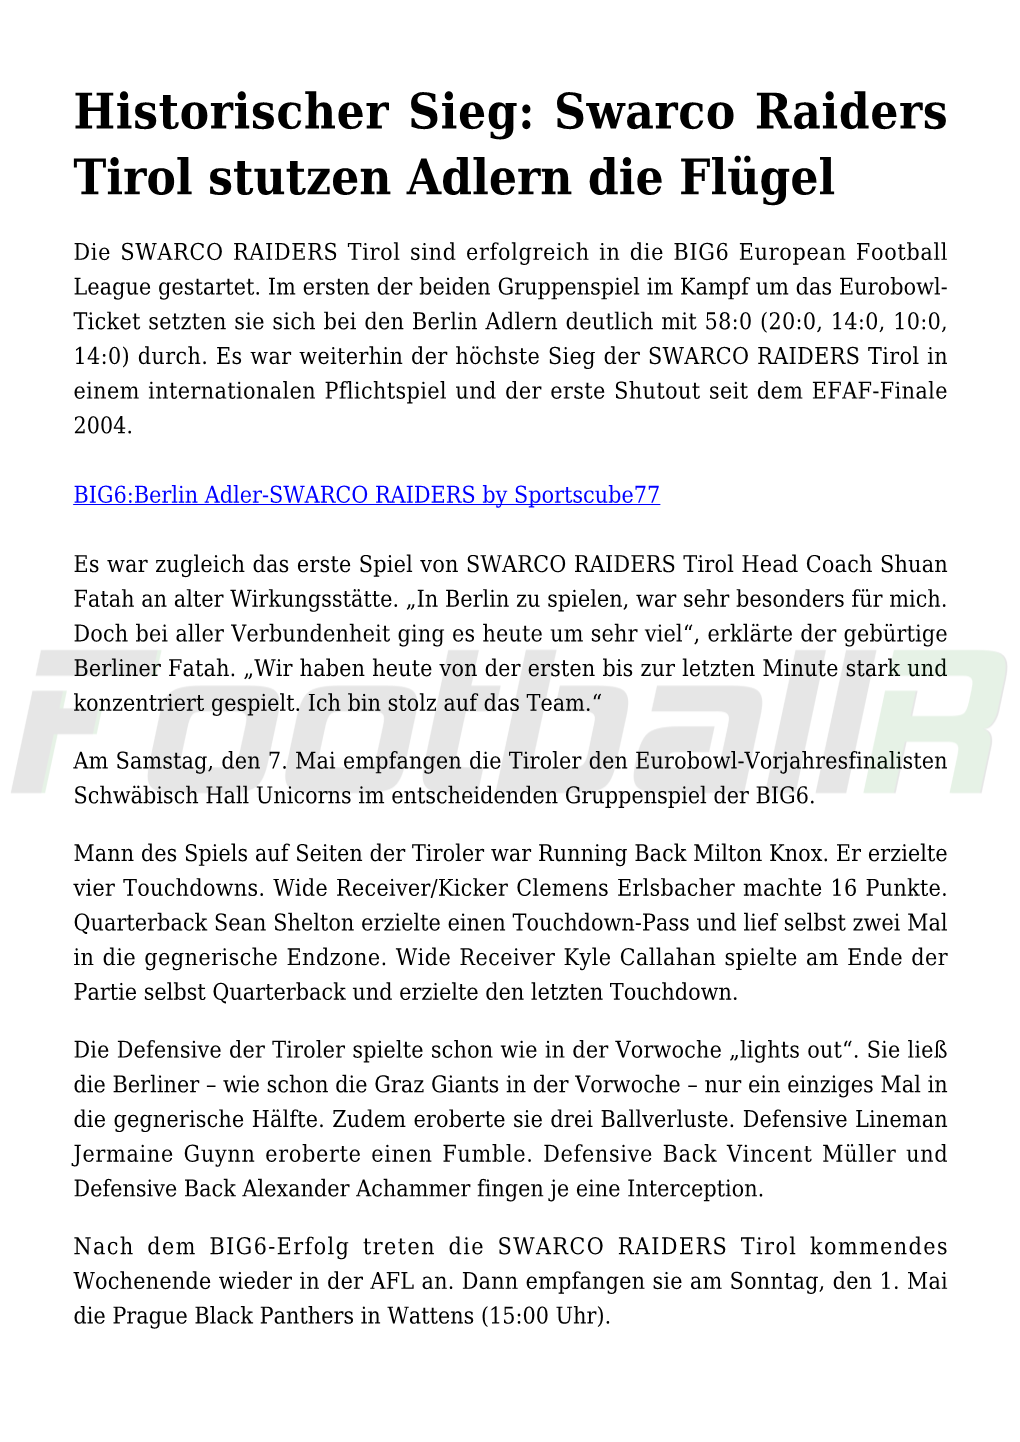 Historischer Sieg: Swarco Raiders Tirol Stutzen Adlern Die Flügel